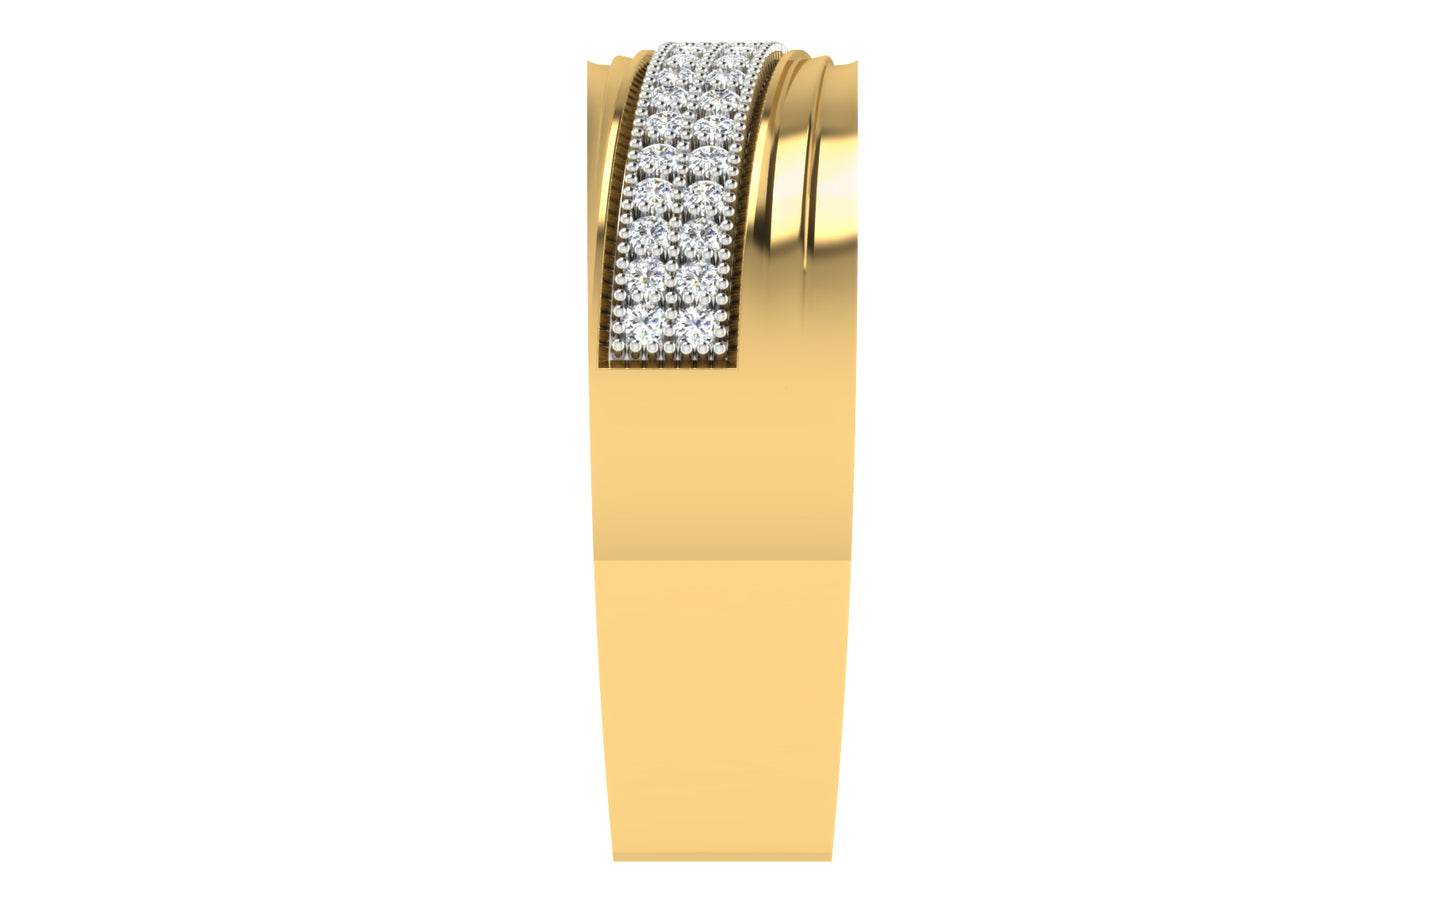 3D Jewelry Files Ring Model 3DM ZA RN 4206